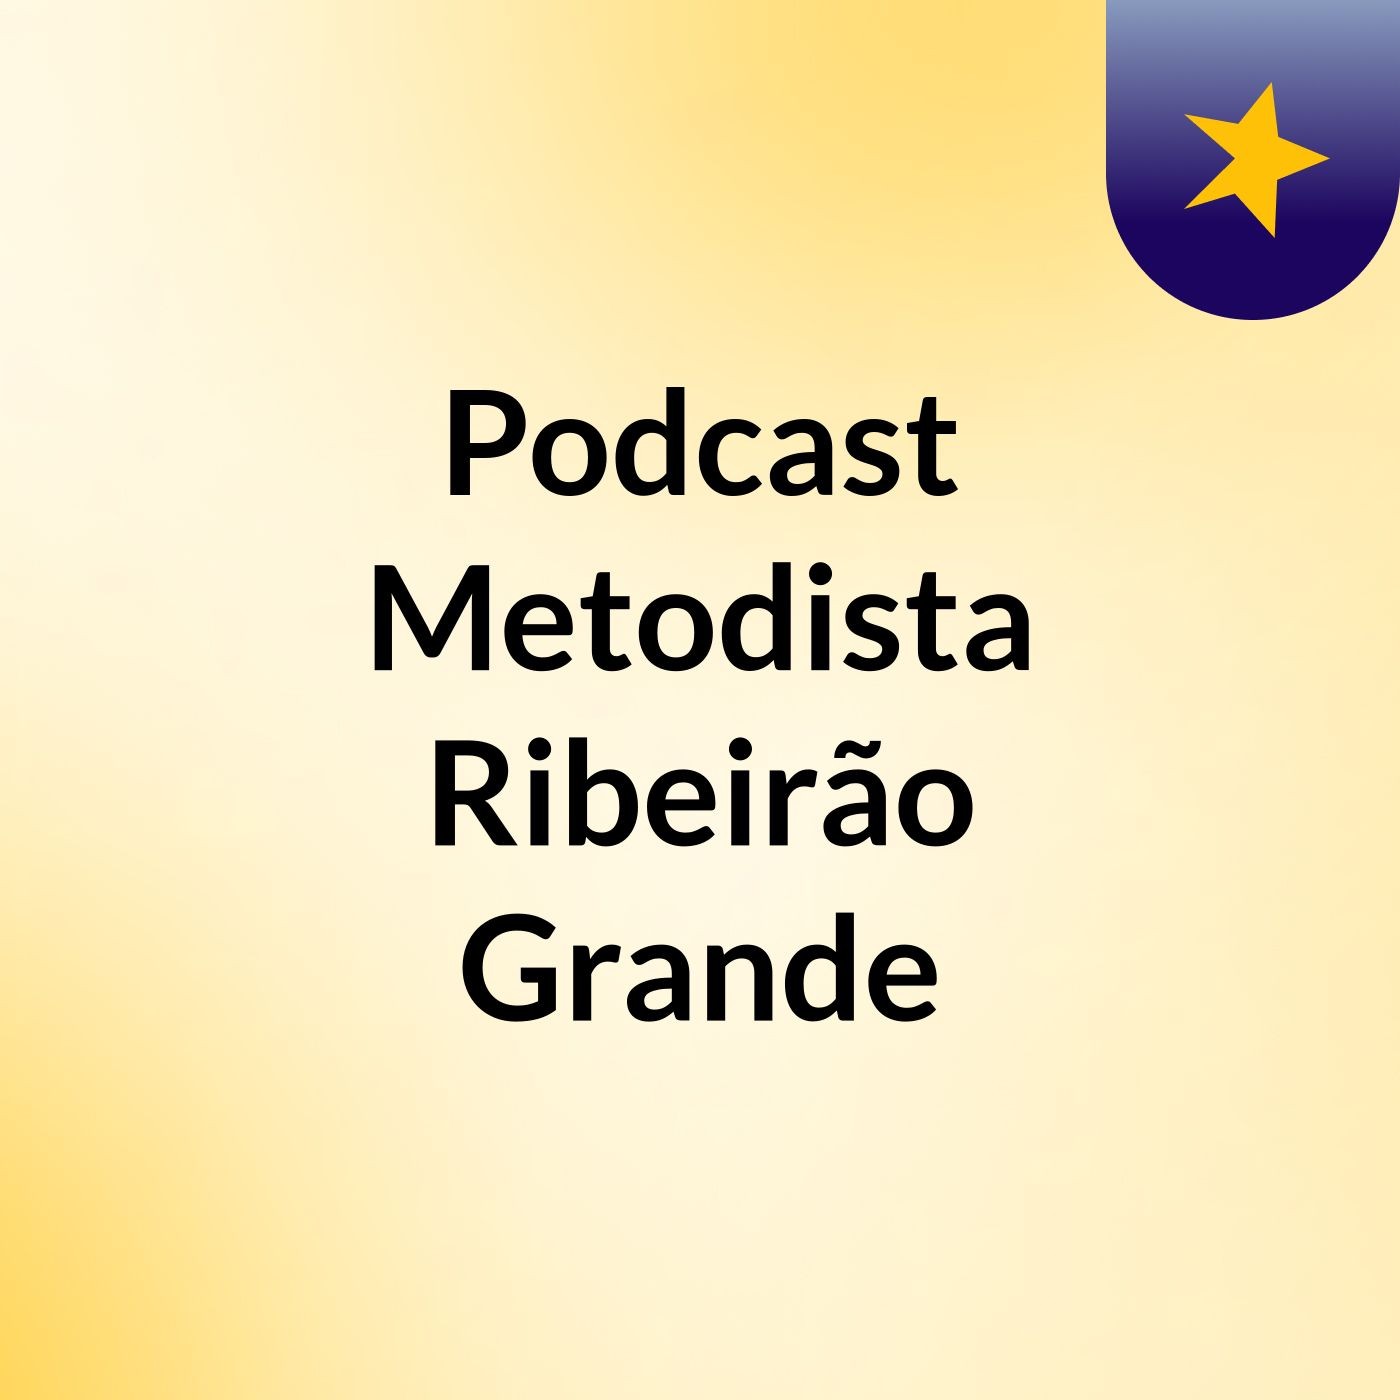 Podcast Metodista Ribeirão Grande